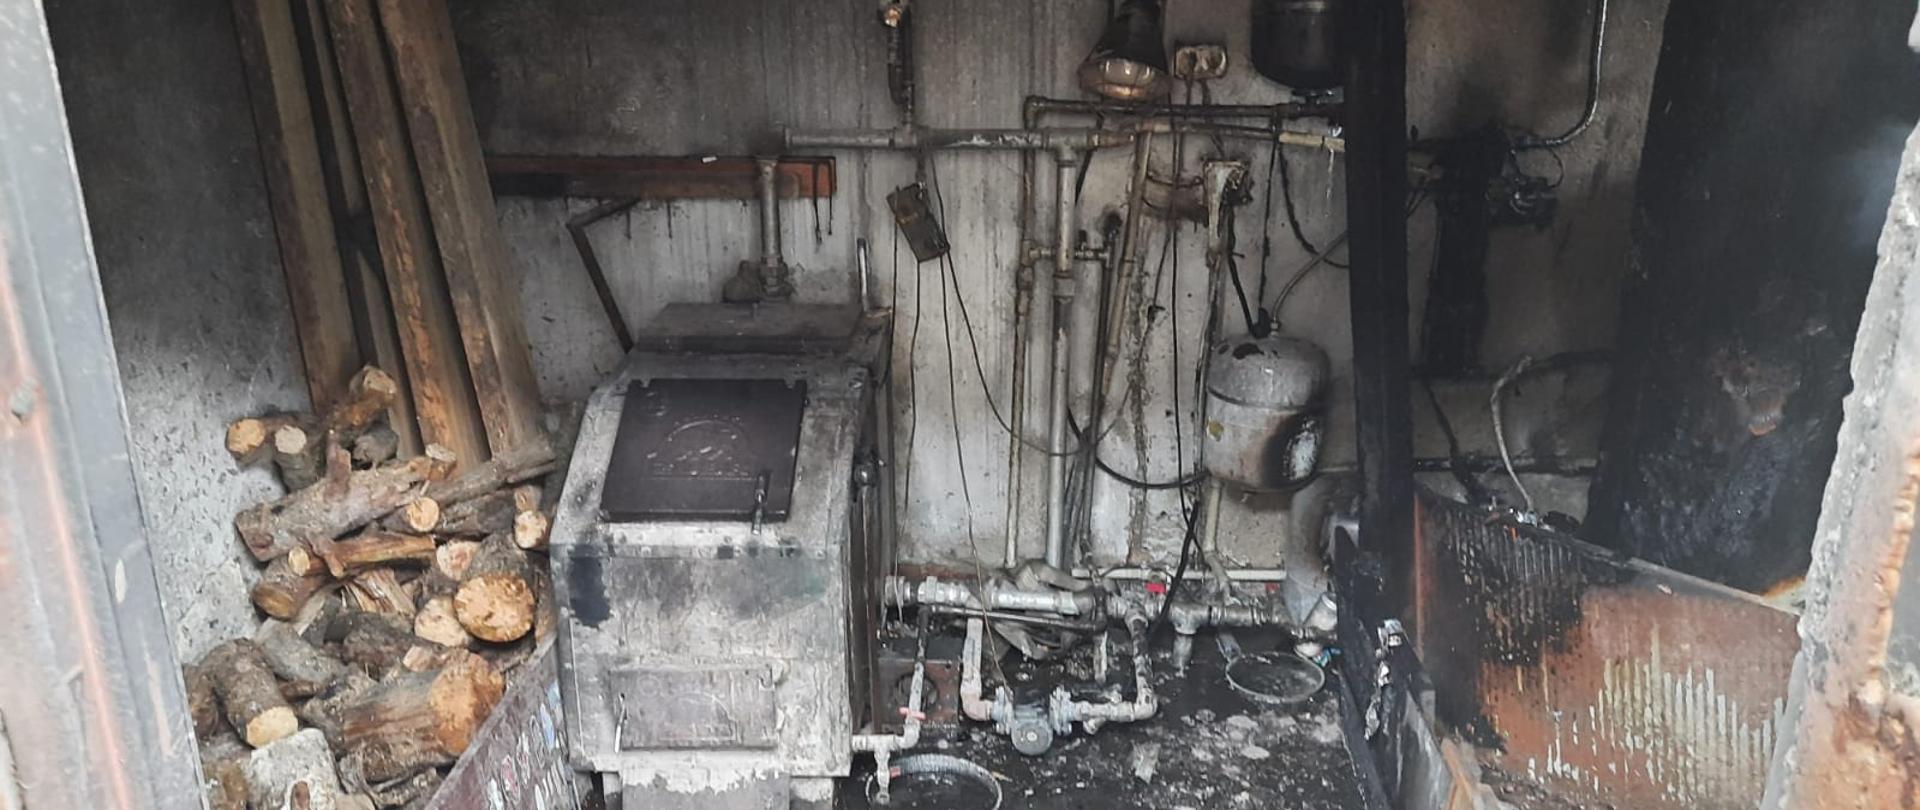 Widać uszkodzone po pożarze pomieszczenie kotłowni oraz wyposażenie pieca